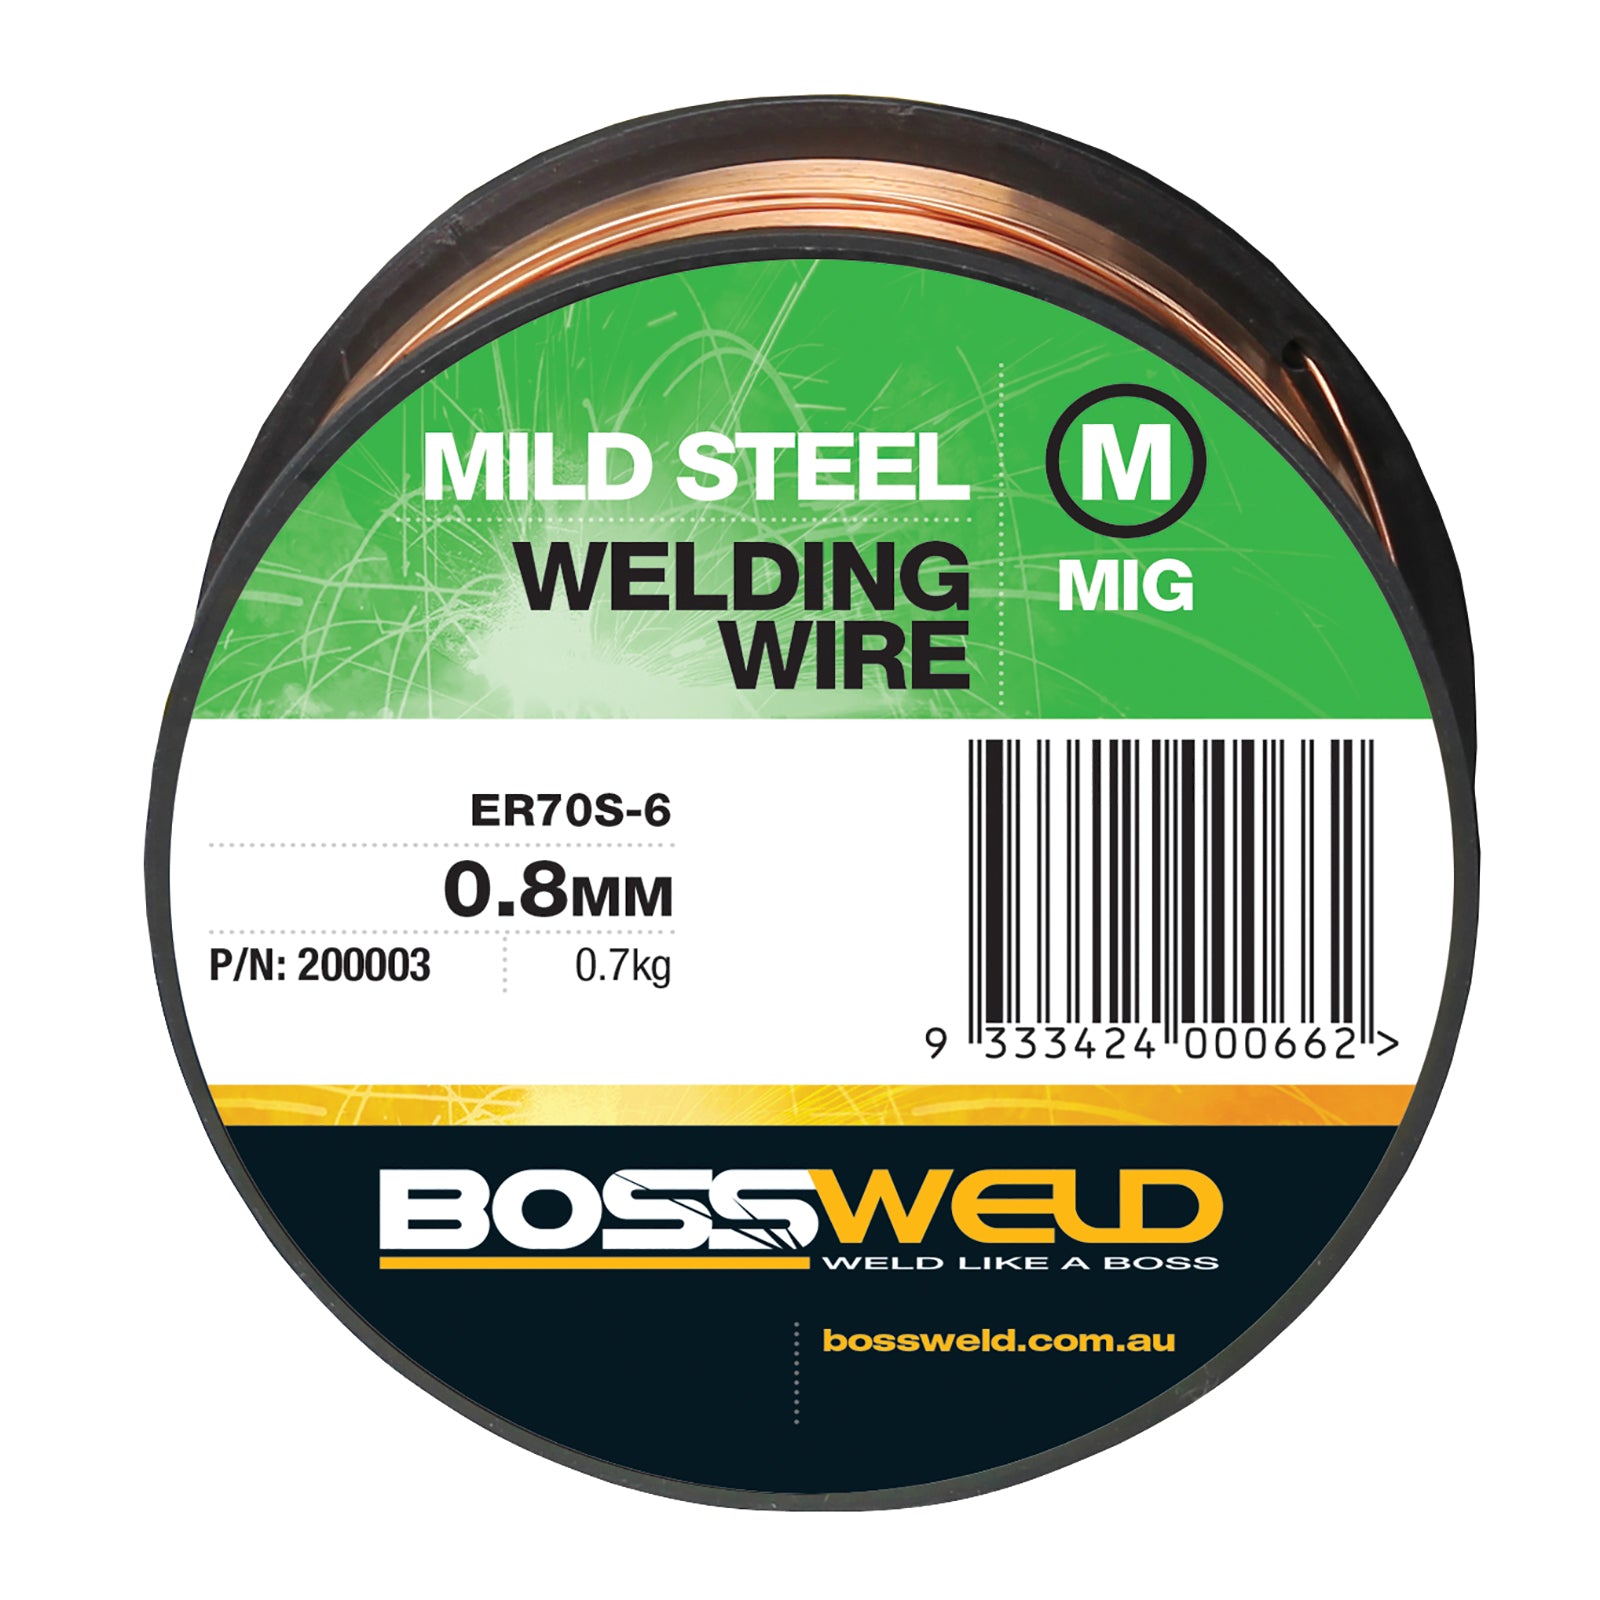 Bossweld Mig Wire Mini Spool - 0.9mm x 0.7kg